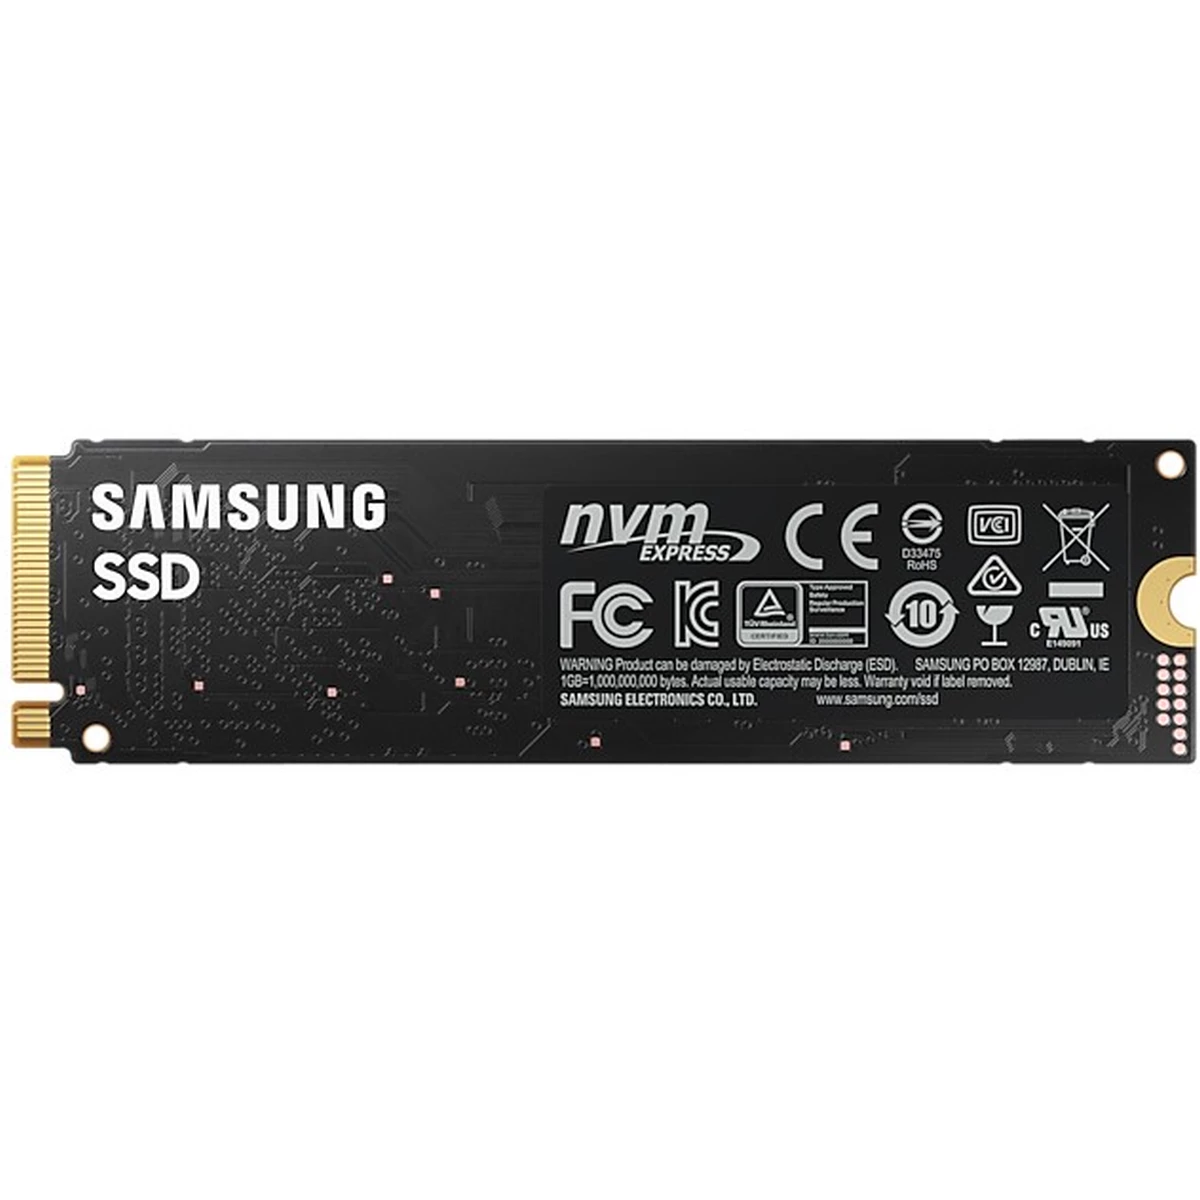 SSD M.2 500GB Samsung 980 NVMe PCIe 3.0 x 4 retail